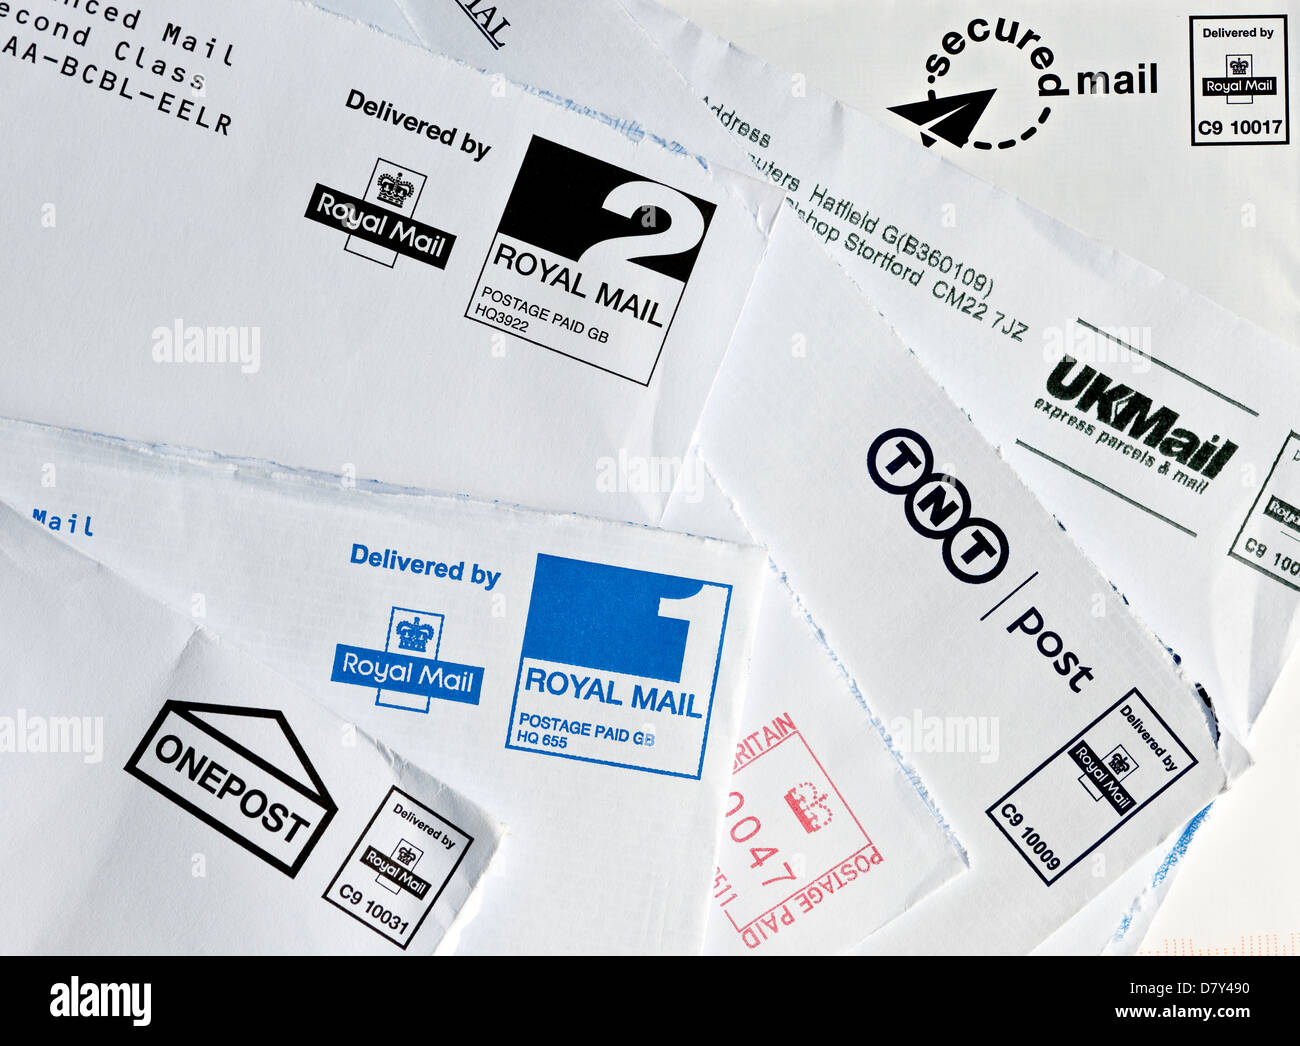 Gros plan des enveloppes d'enveloppes de courrier du Royaume-Uni utilisées ouvertes affranchies estampillées Angleterre Royaume-Uni GB Grande-Bretagne Banque D'Images